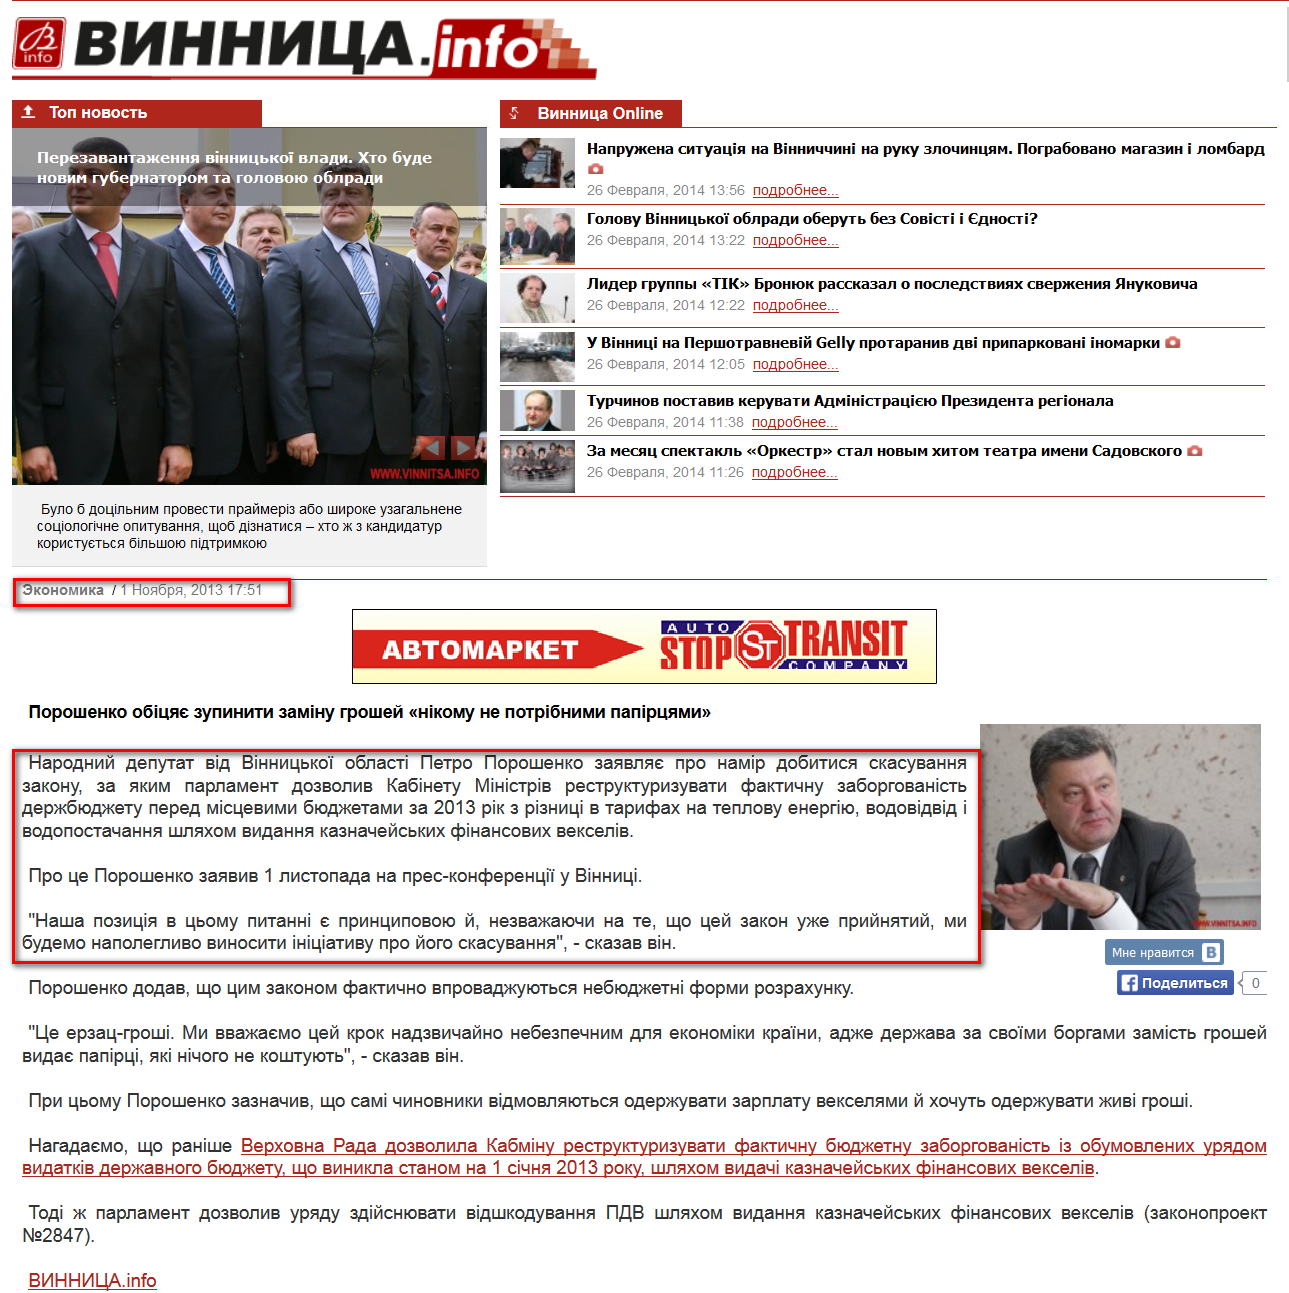 http://www.vinnitsa.info/news/poroshenko-obitsyaye-zupiniti-zaminu-groshey-nikomu-ne-potribnimi-papirtsyami.html